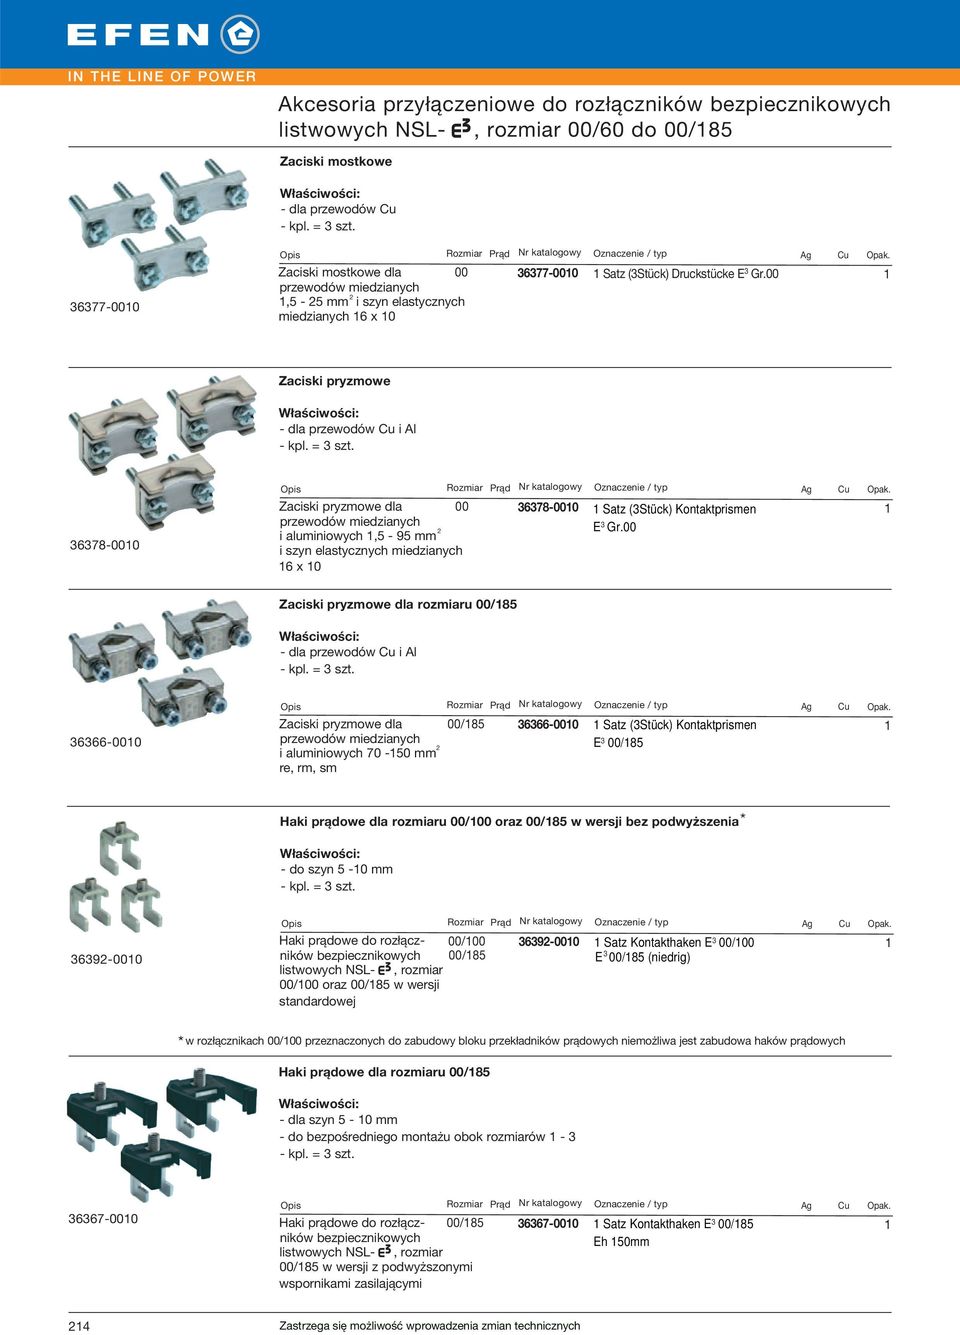 678-000 Zaciski pryzmowe dla przewodów miedzianych i aluminiowych,5-95 mm 00 678-000 Satz (Stück) Kontaktprismen E Gr.